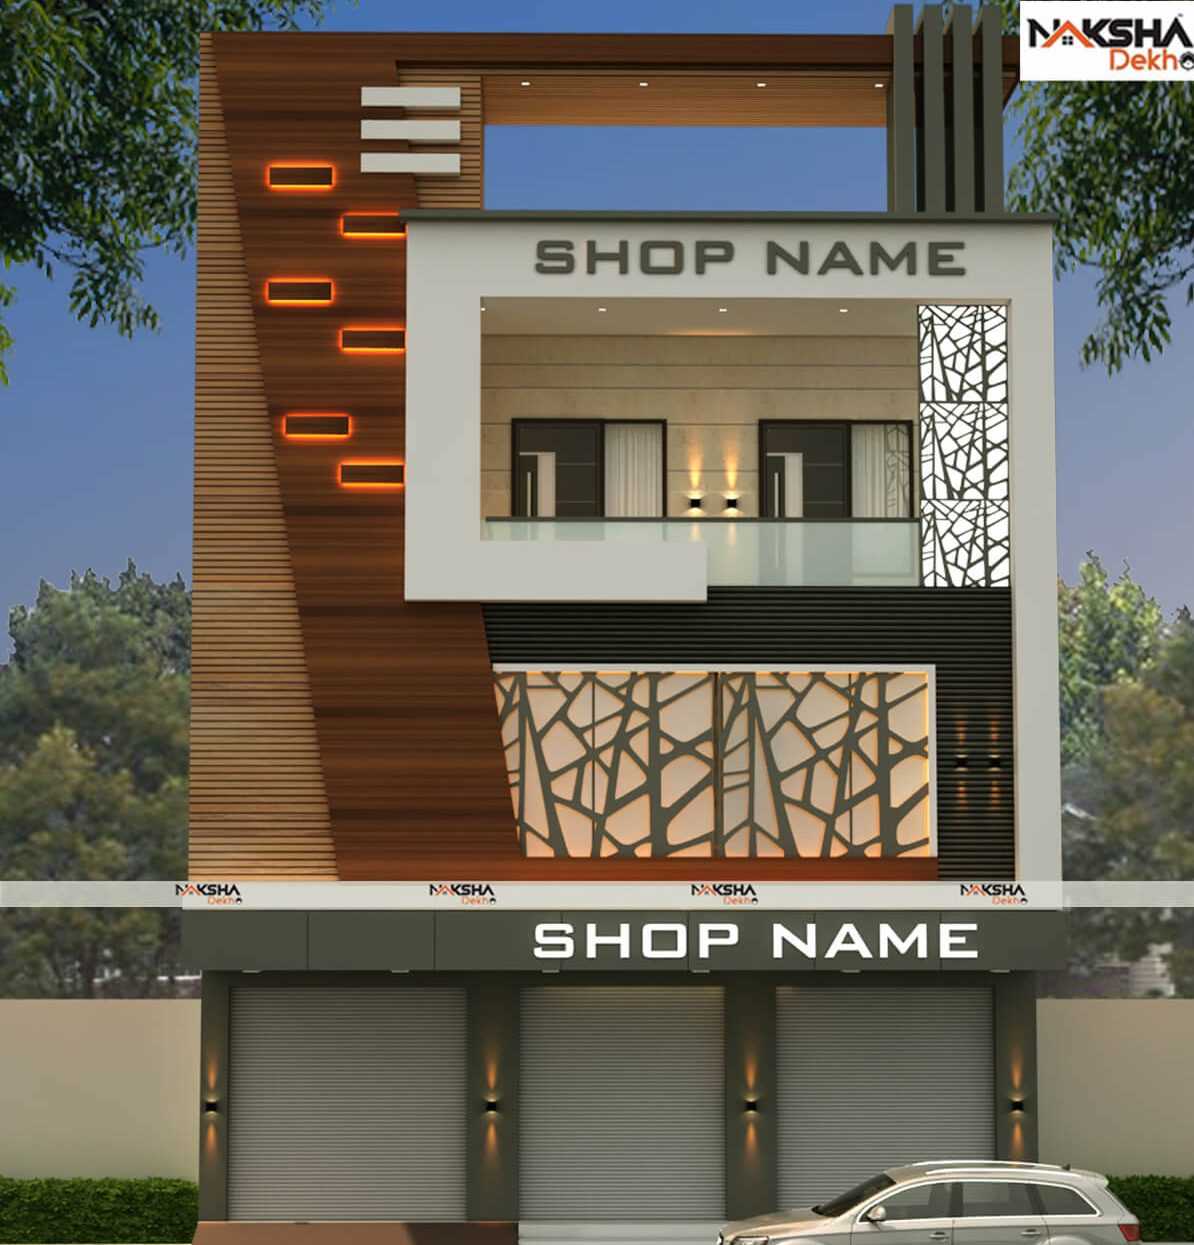 Front Elevation Design - Nakshadekho.com